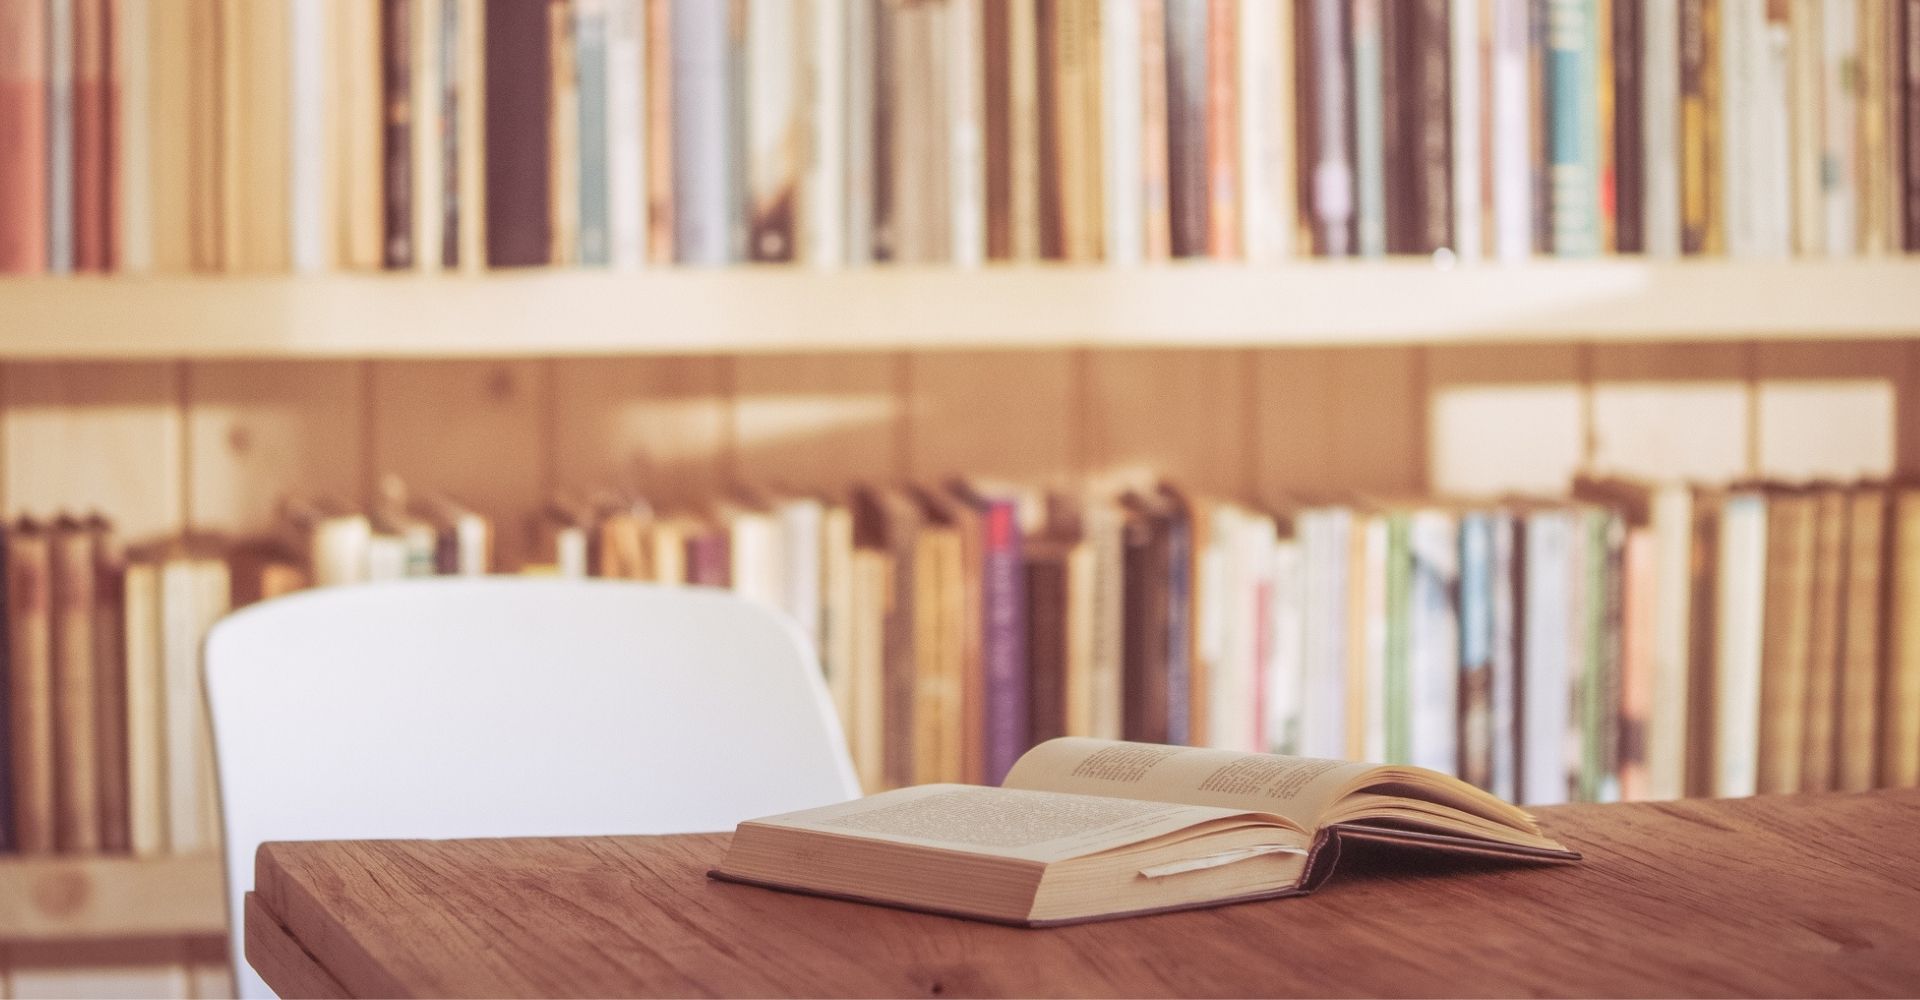 Un libro aperto su un tavolo, con dietro una libreria piena di libri